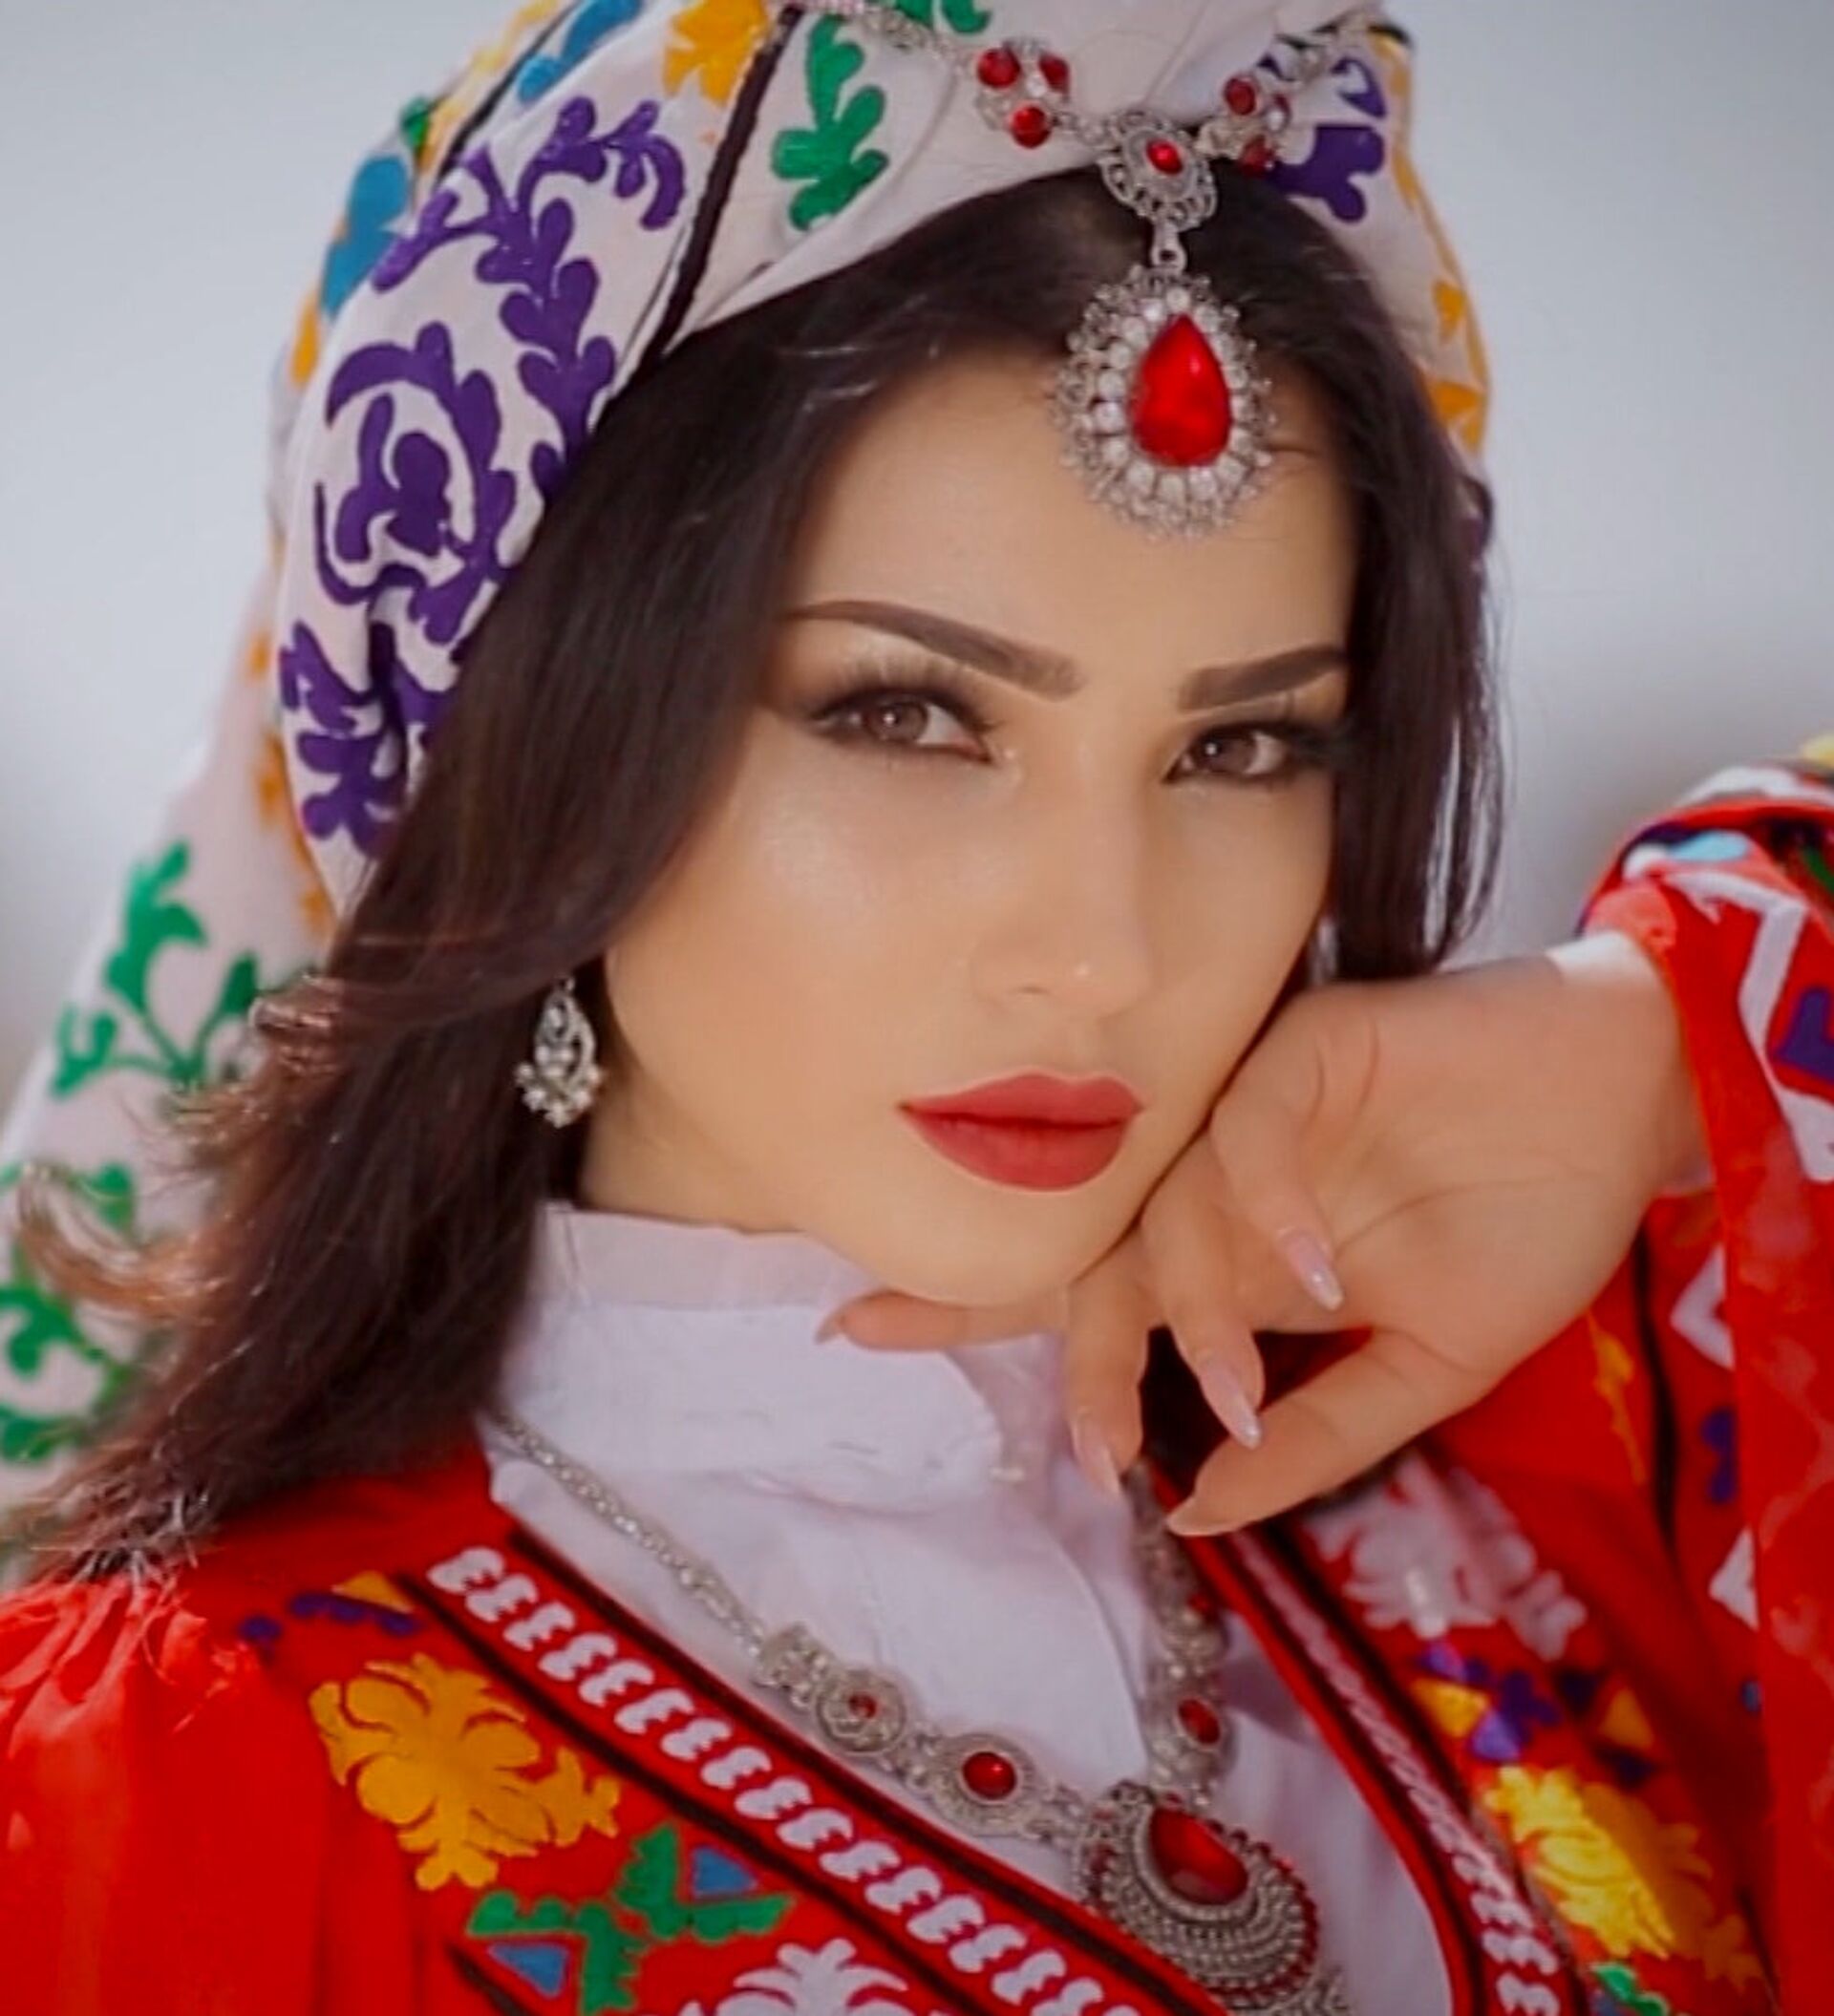 Роскошный вид дороже денег: сколько стоит красота таджикских девушек -  14.08.2019, Sputnik Таджикистан